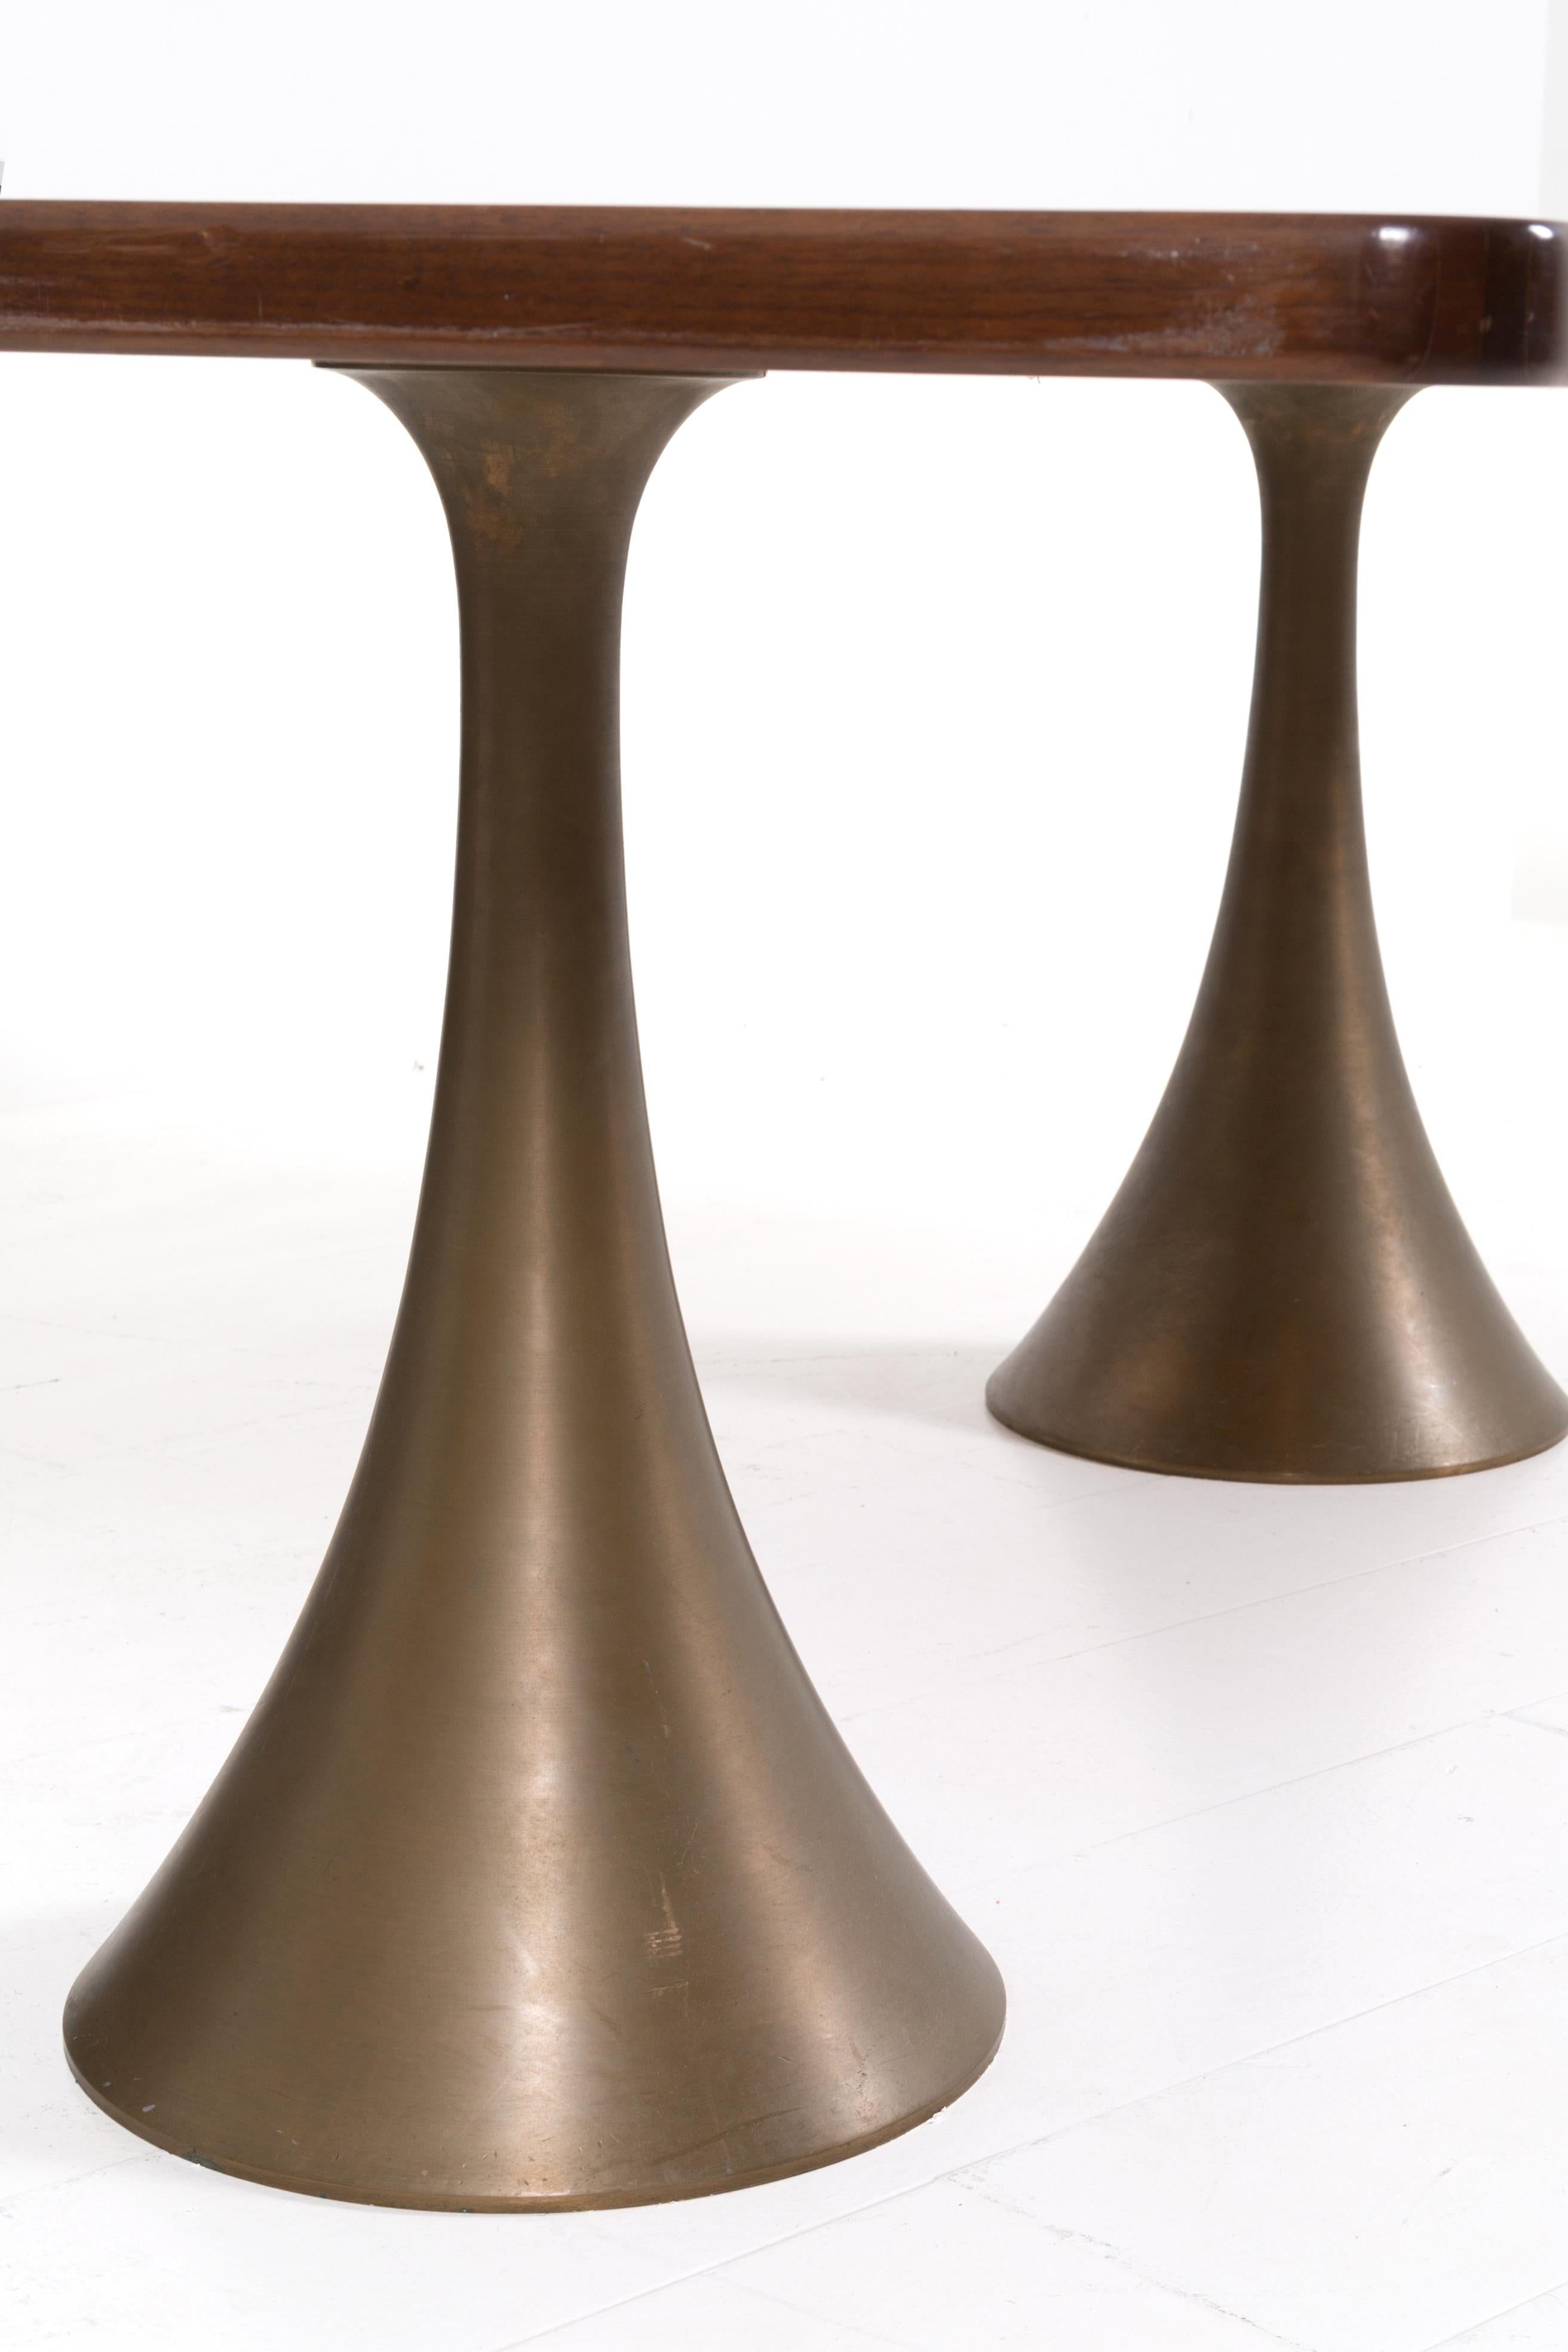 Rare et importante table conçue et réalisée par Osvaldo Borsani en 1971. La table a un plateau en bois épais. La particularité et l'unicité de la table sont ses piédestaux en forme de trompette et ses supports entièrement en bronze. L'importance de